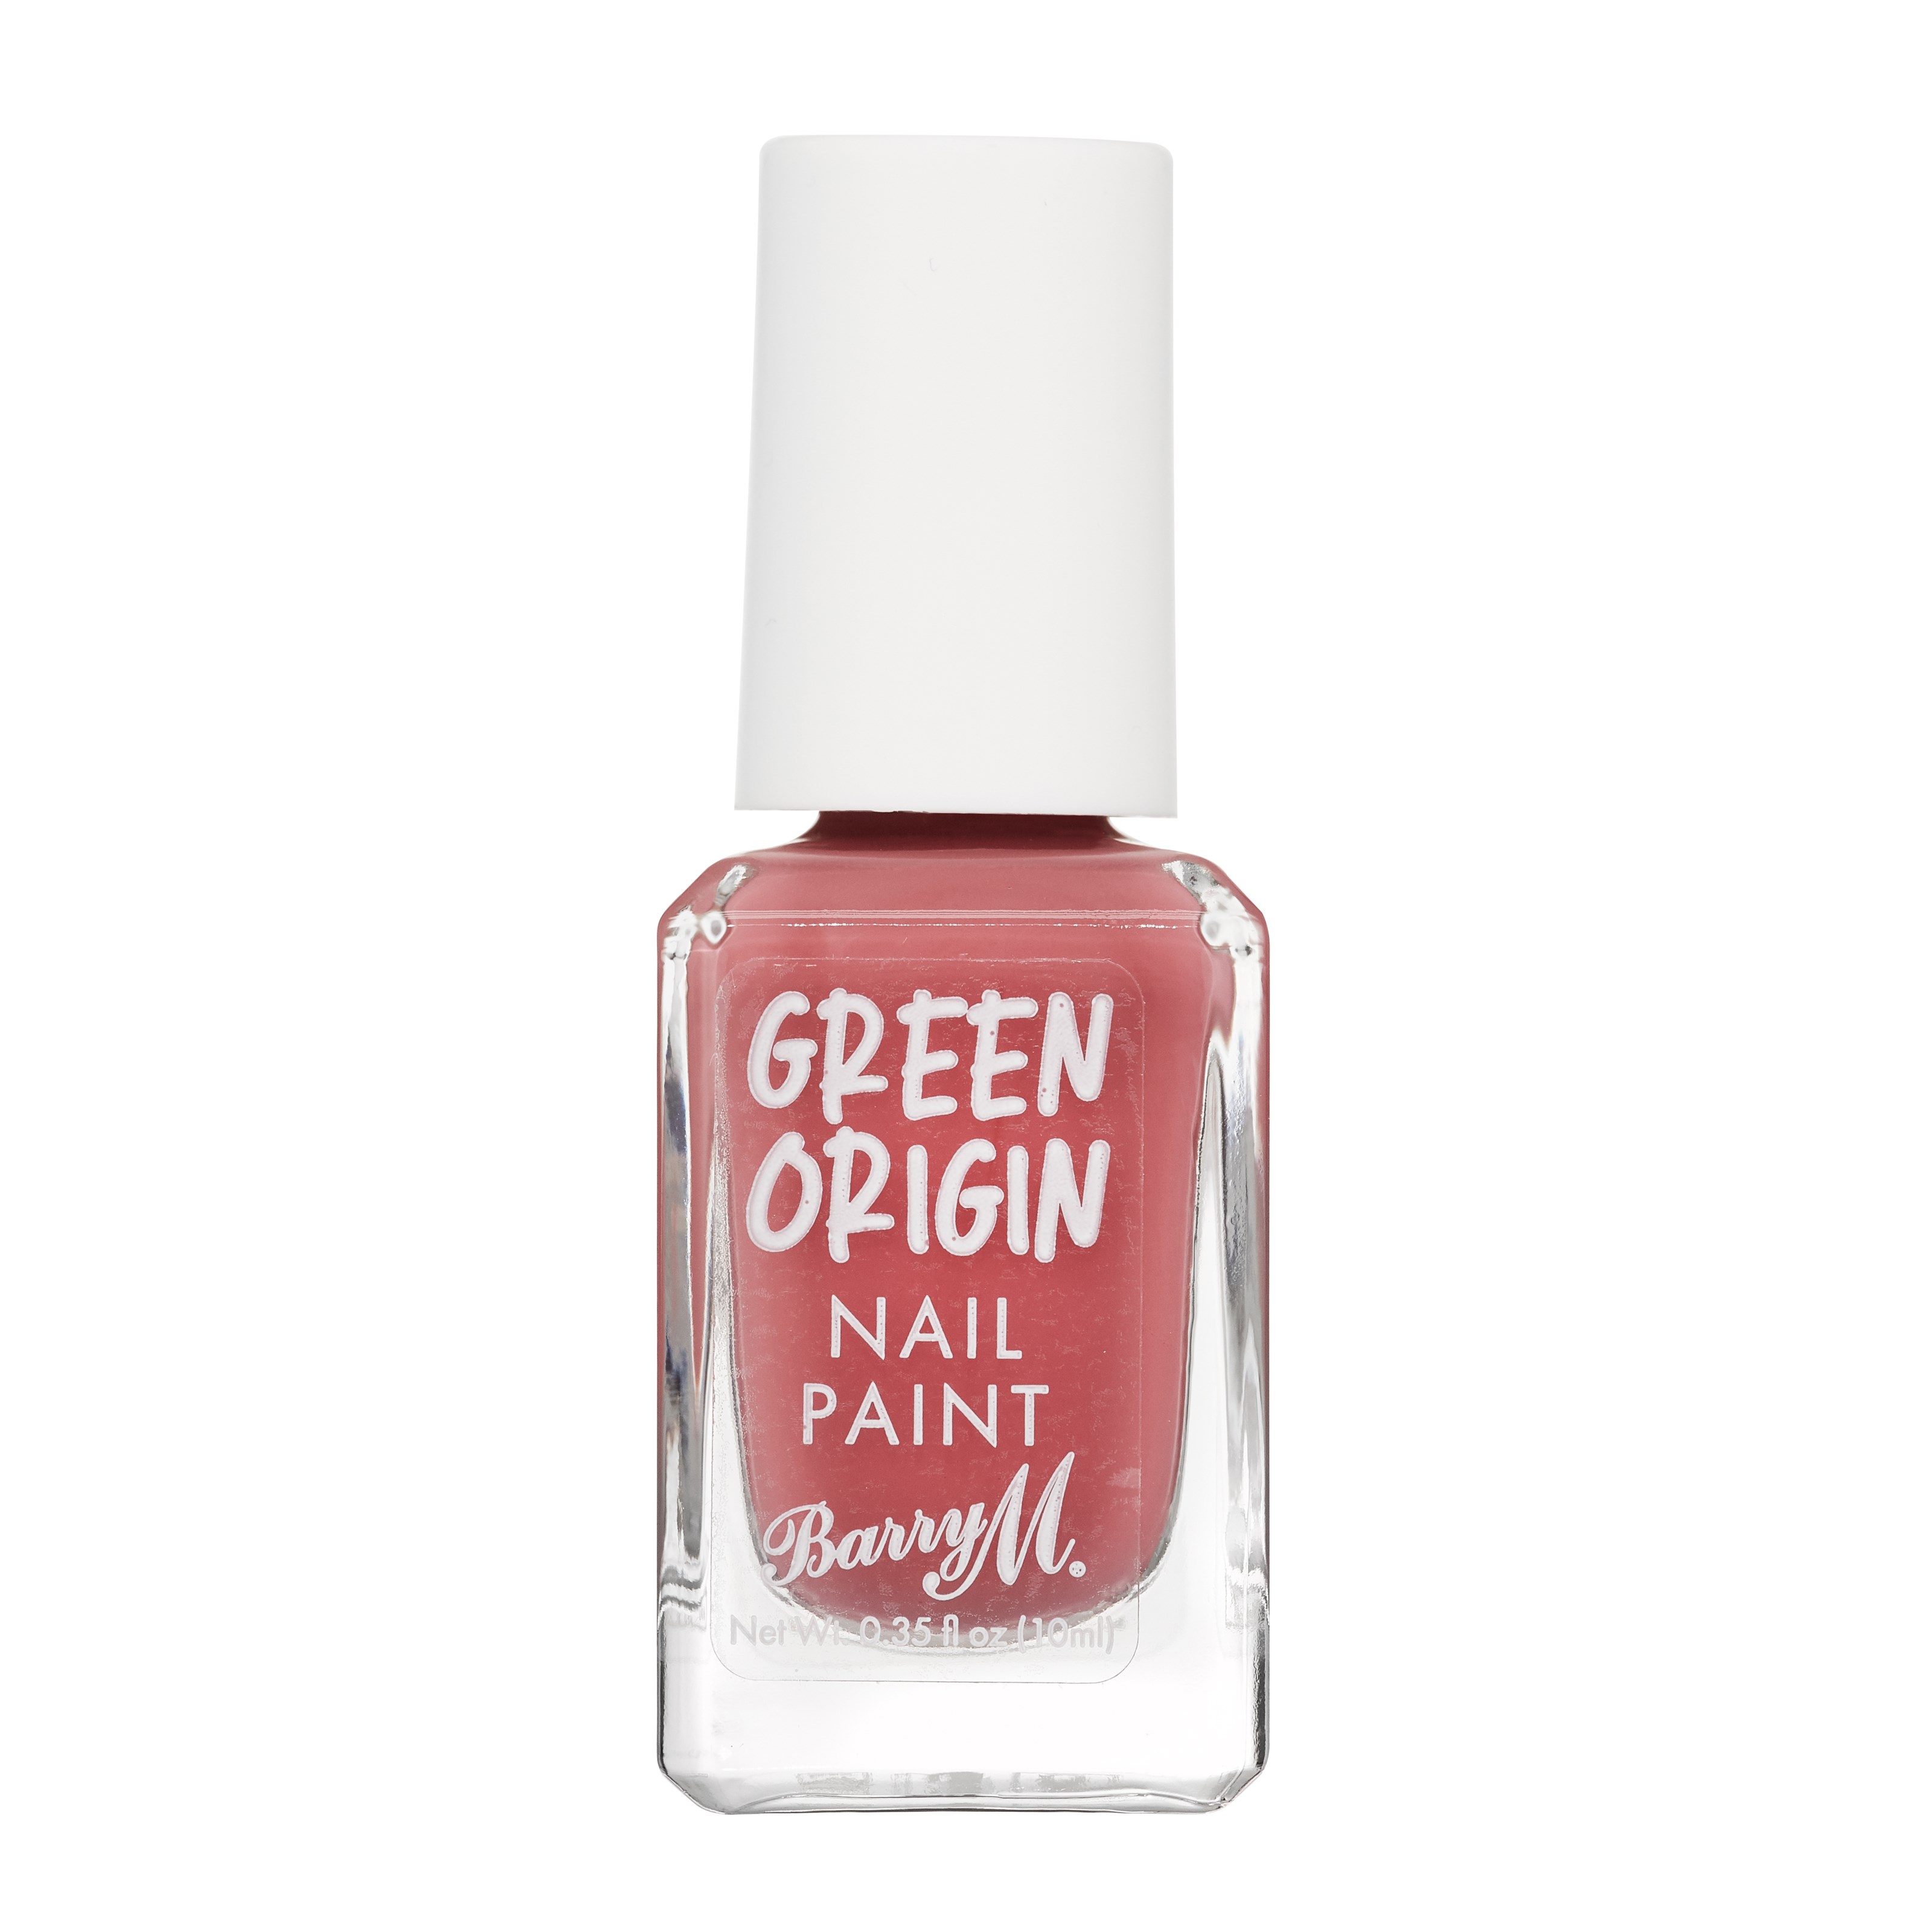 Läs mer om Barry M Green Origin Nail Paint Cranberry